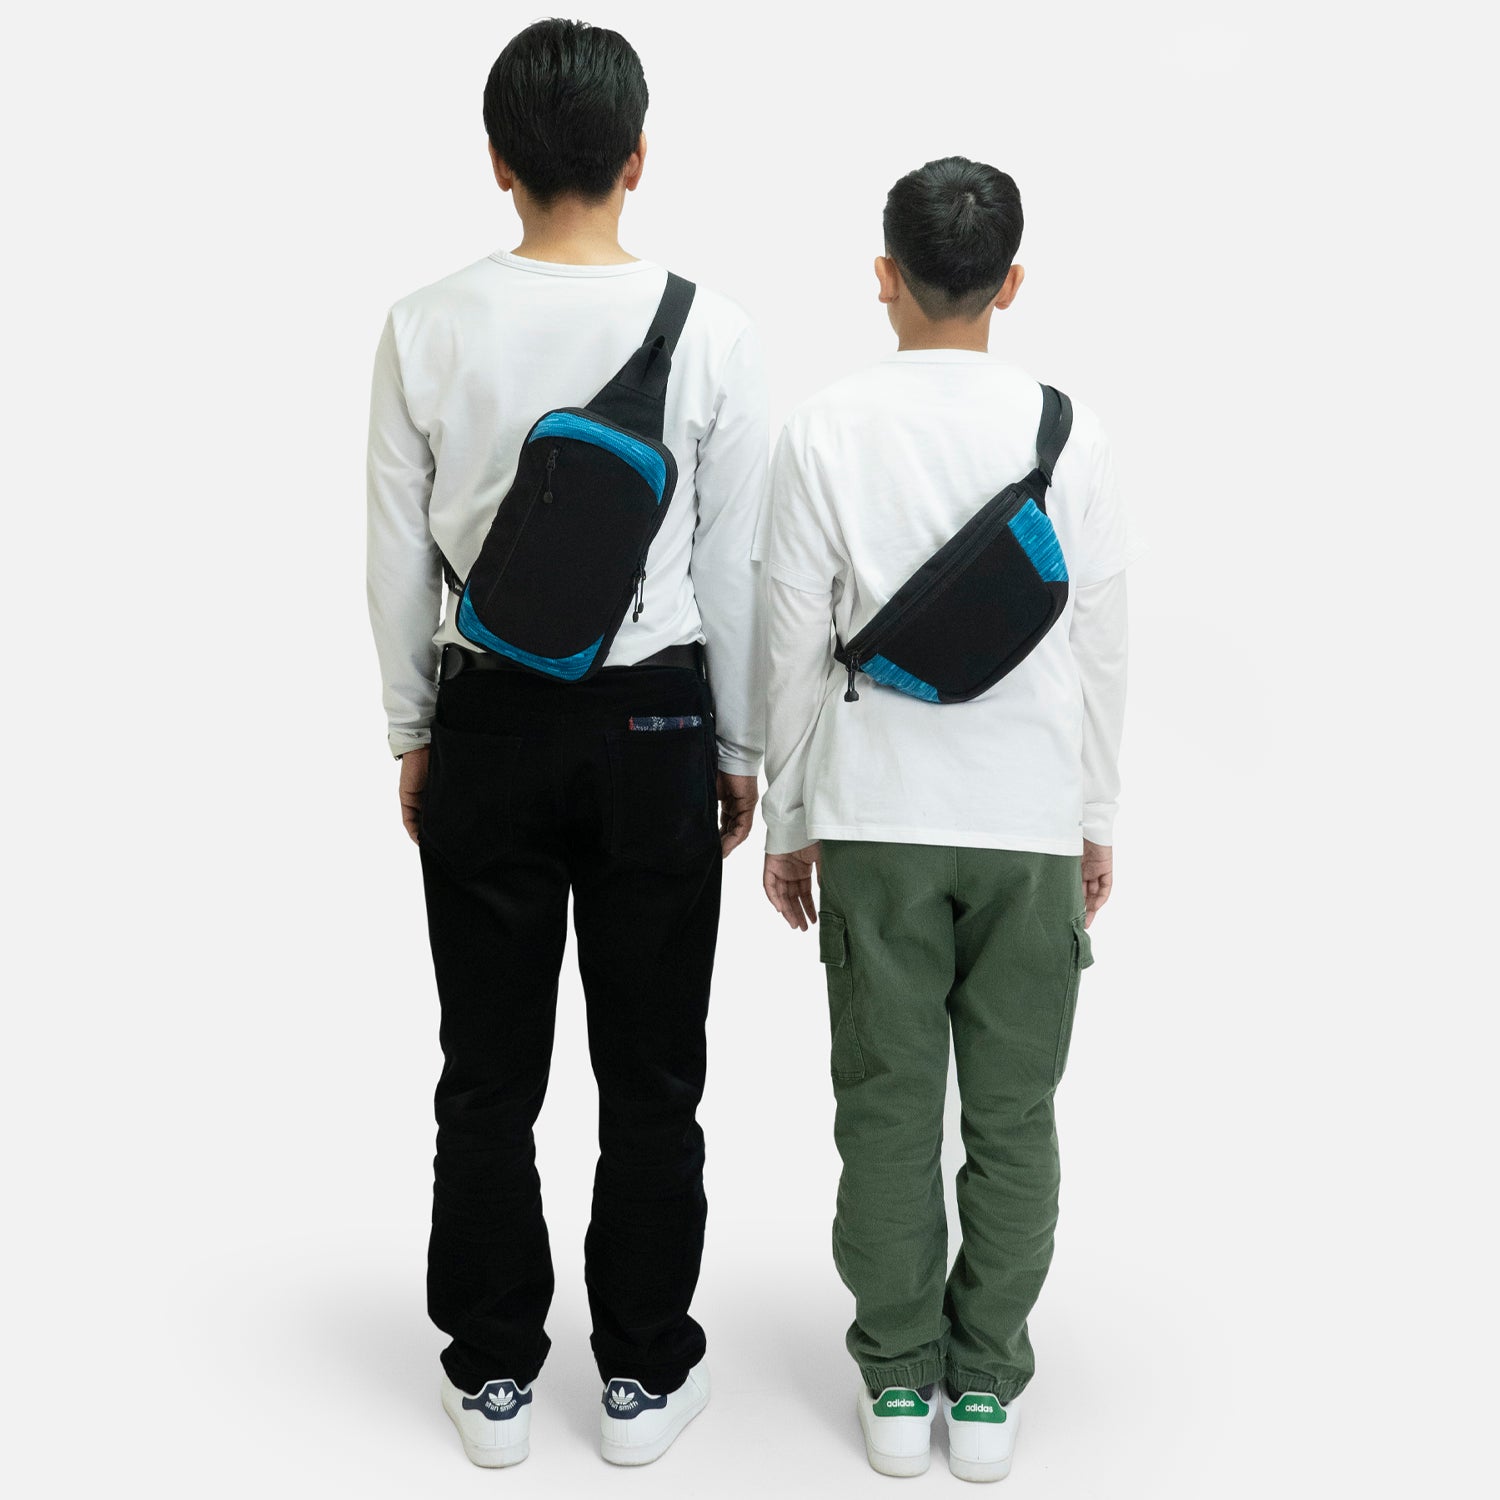 N700A東海道新幹線モケットボディバッグは、大人はもちろん子供も使えるショルダーバッグです。身長に合わせてショルダーの長さを調整して、親子でシェアすることもできます。